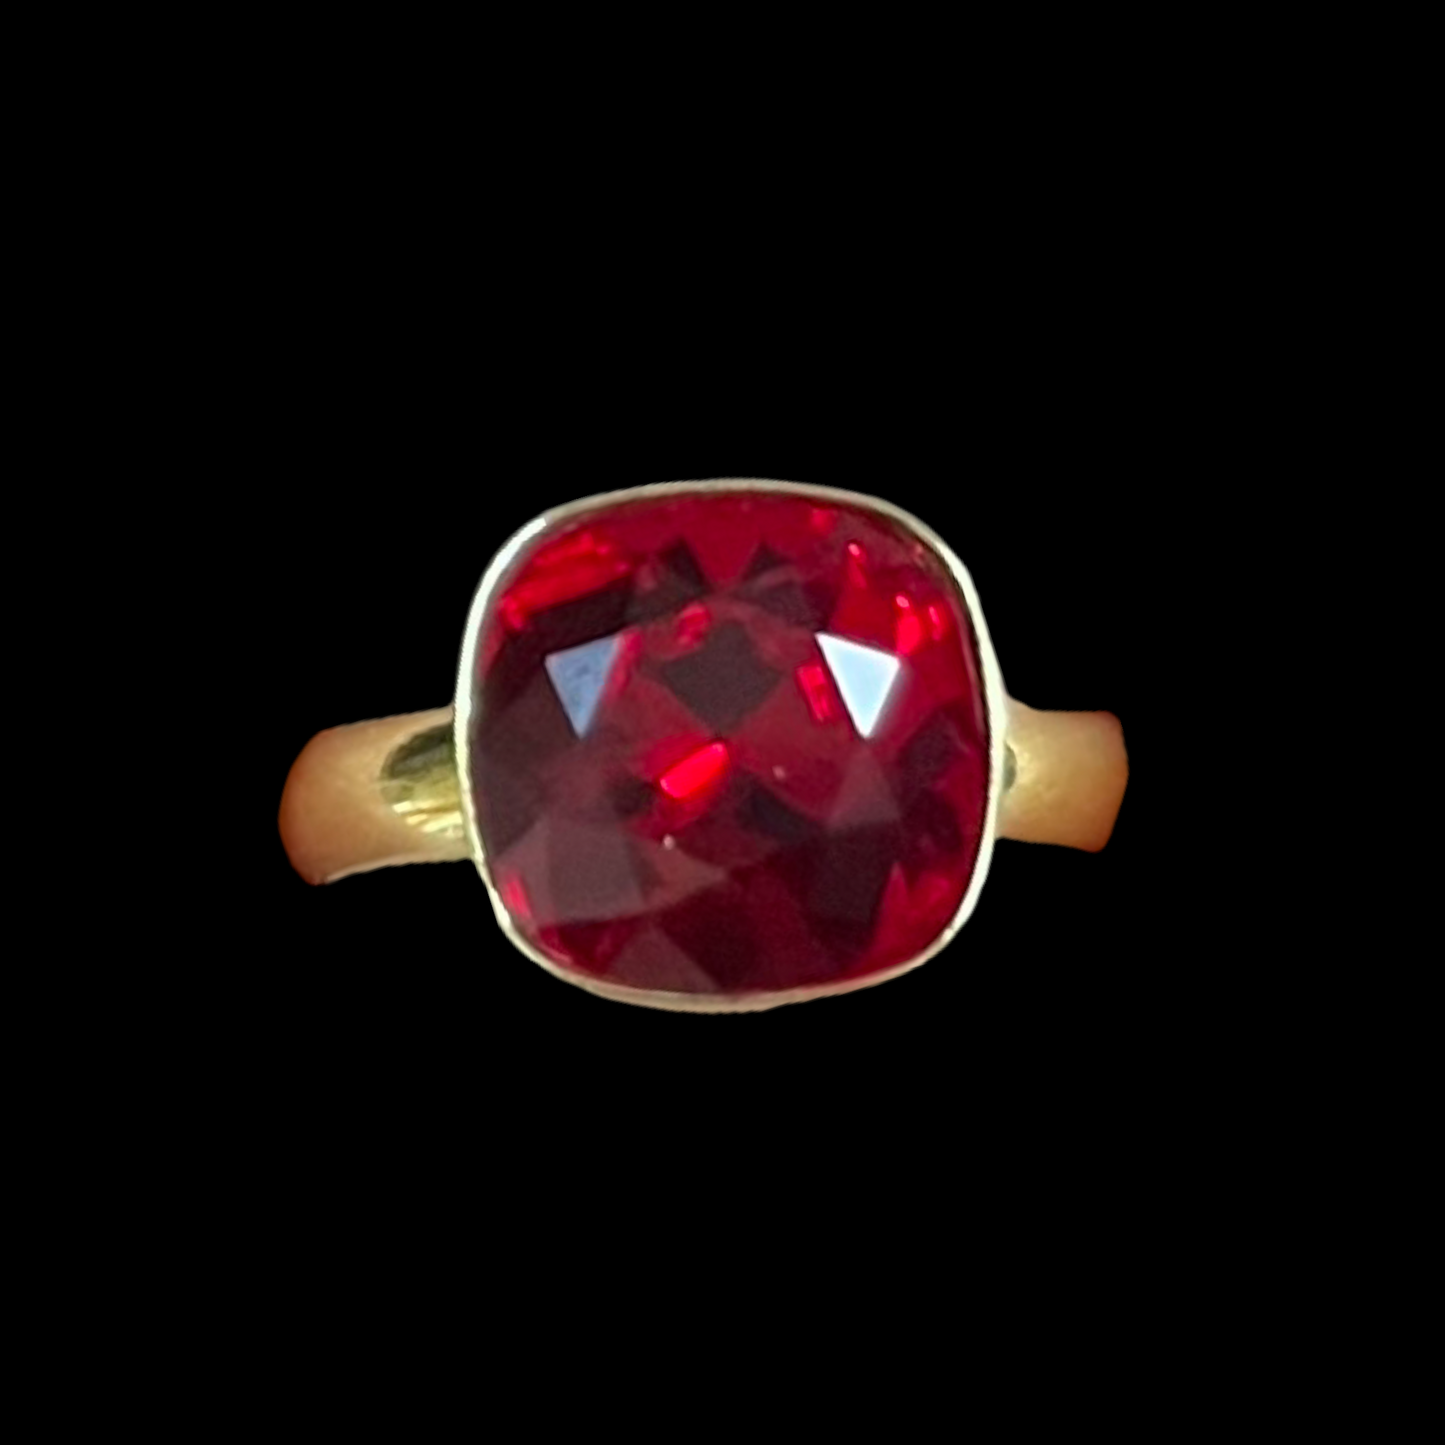 Bague avec cristaux Swarovski, collection KIM, rouge siam, argent doré